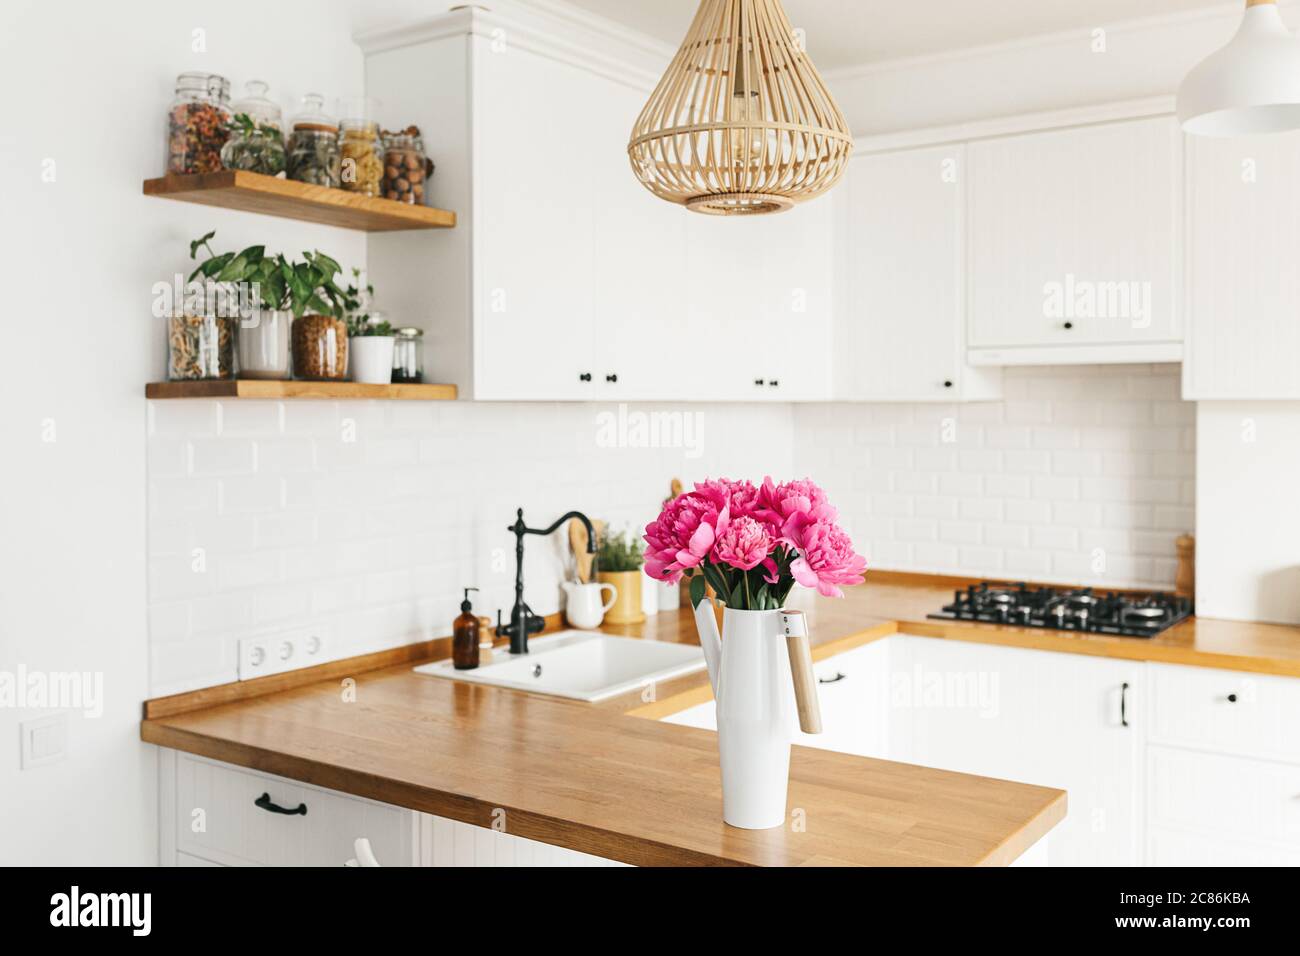 Fleurs pivoines dans vase sur cuisine blanche propre dans le style moderne, détails de cuisine. Séjour durable cuisine écologique Banque D'Images